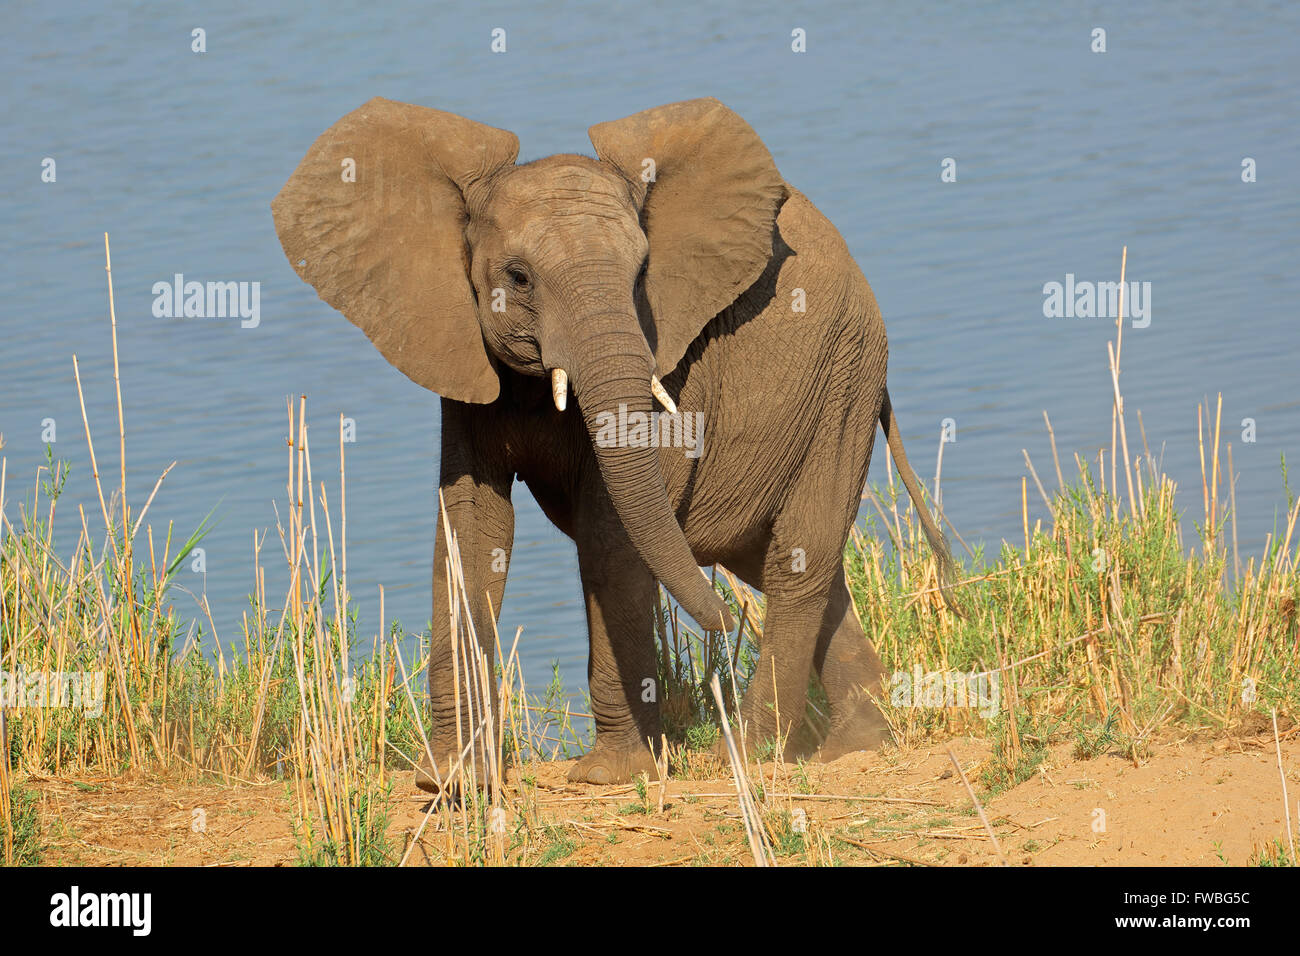 Young African elephant (Loxodonta africana) dans l'habitat naturel, Kruger National Park, Afrique du Sud Banque D'Images